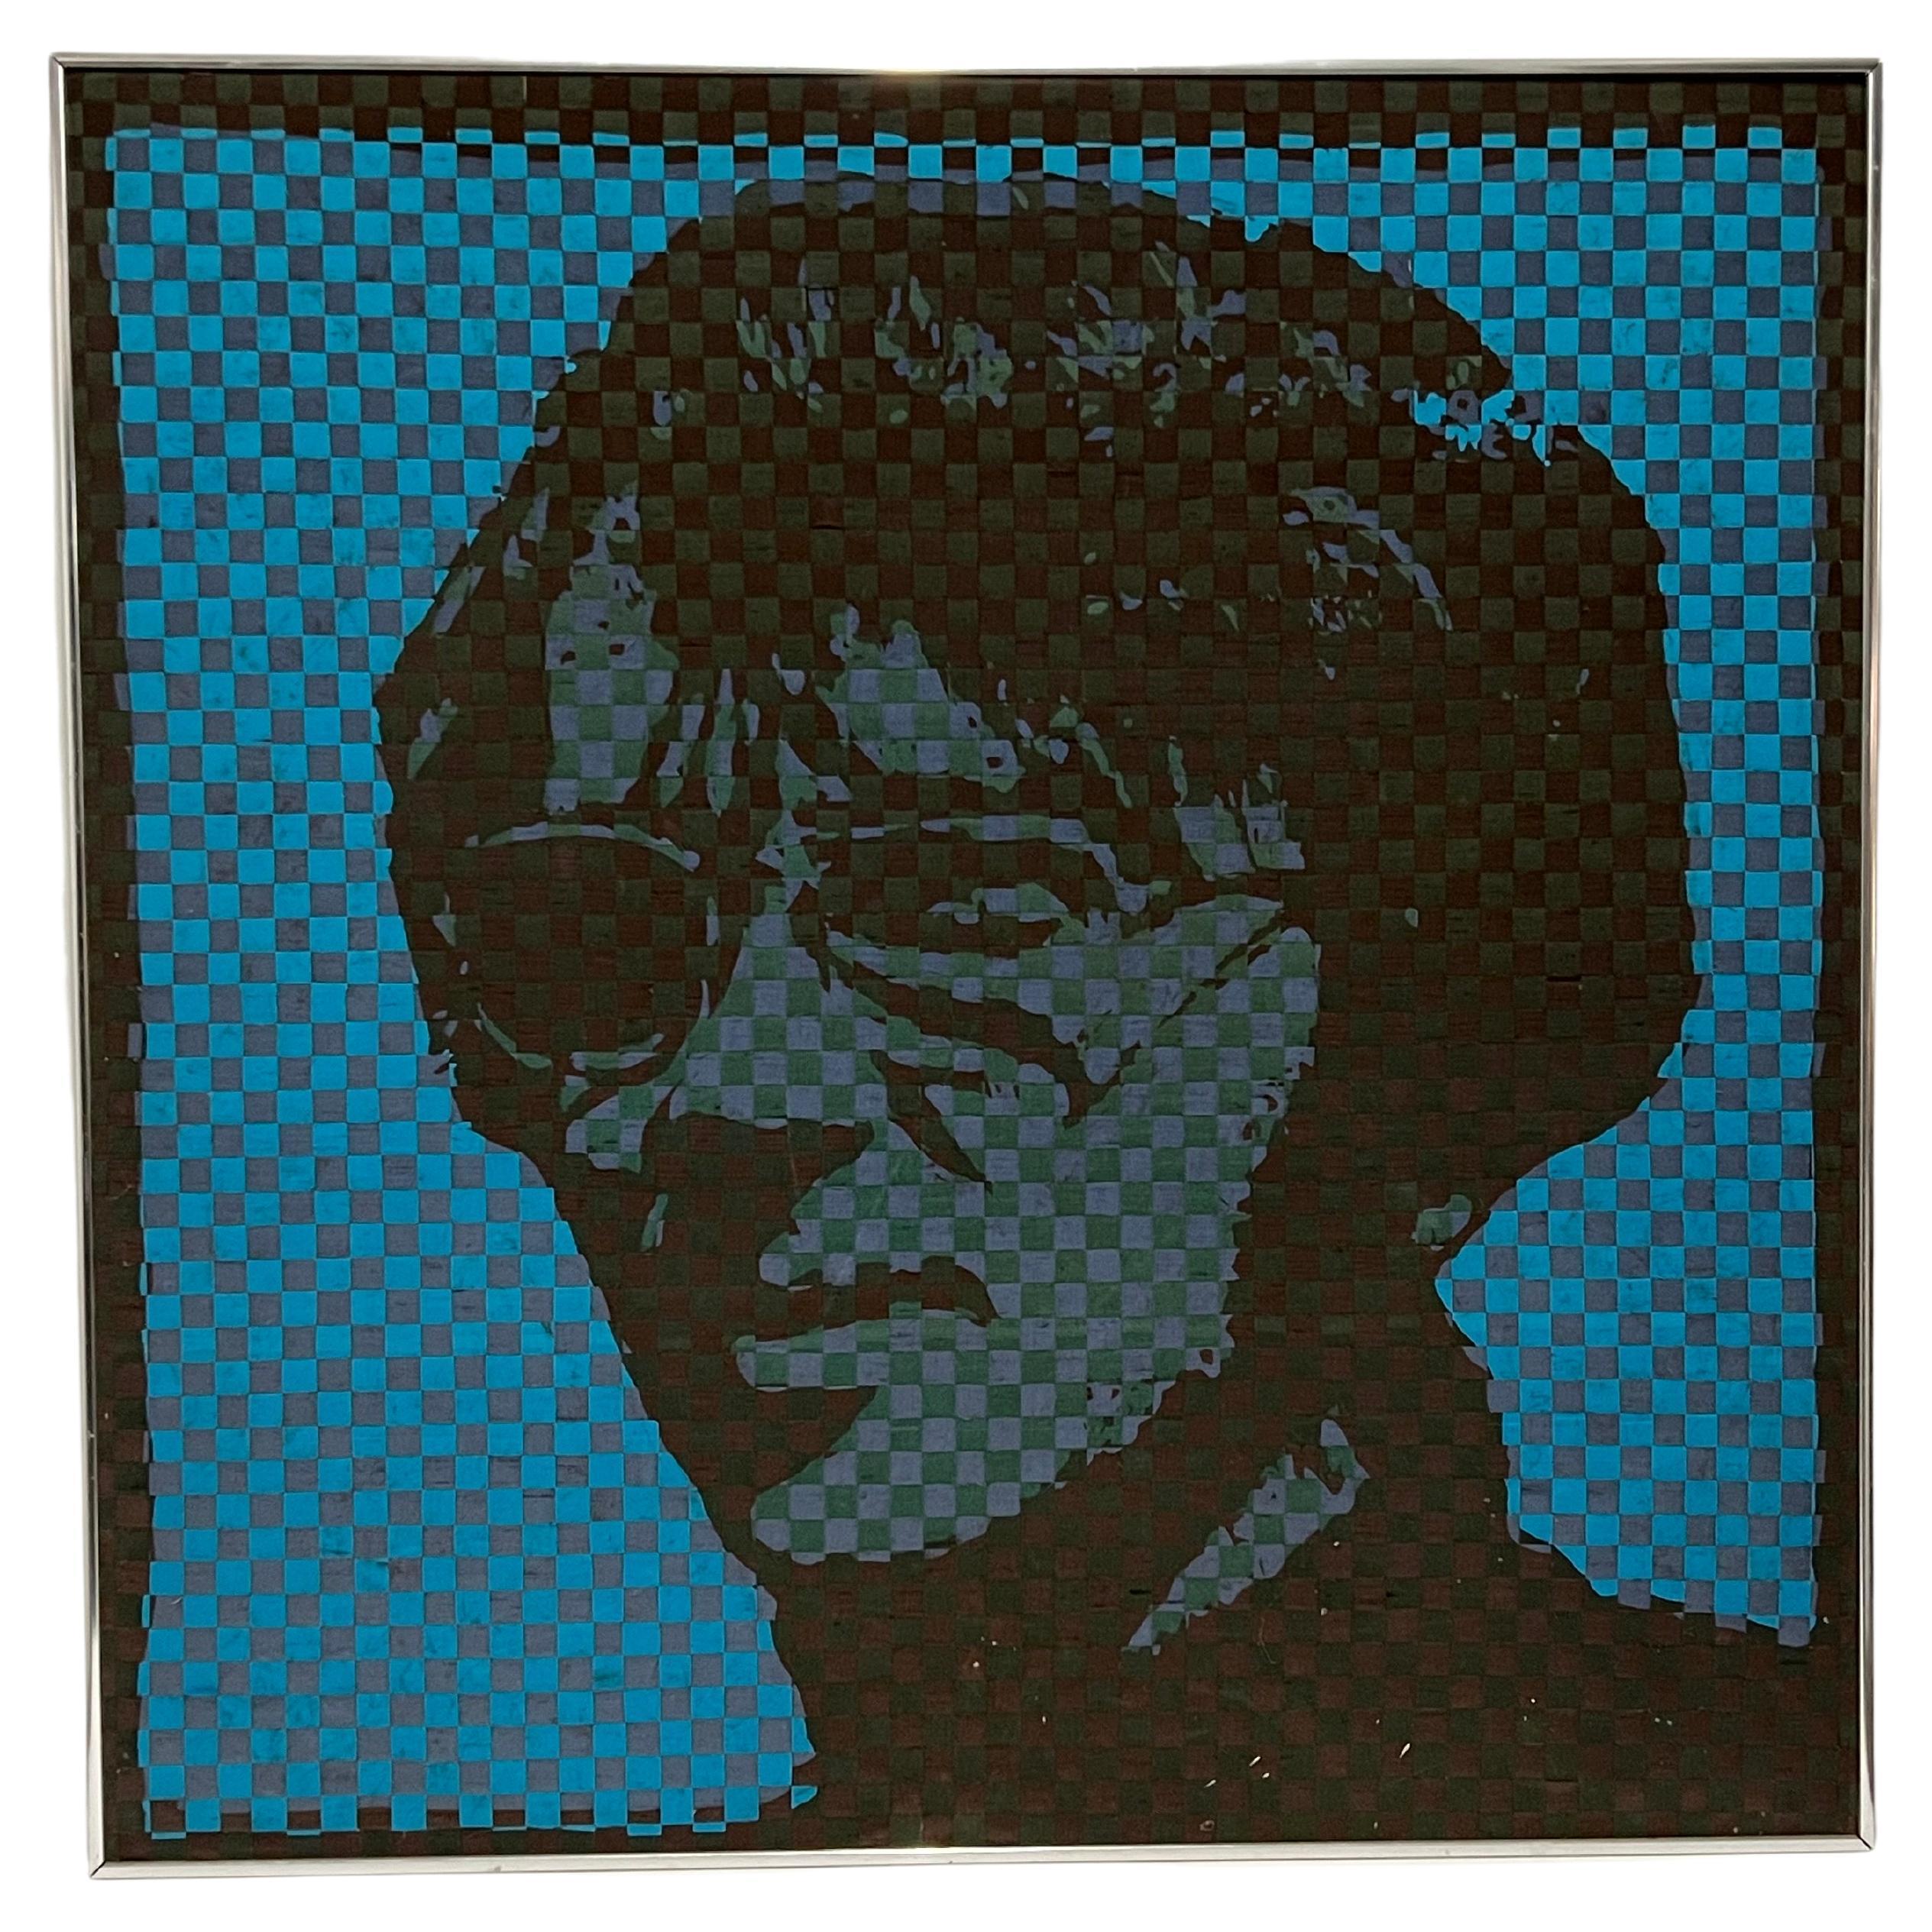 Dieses einzigartige Kunstwerk von Richard Proctor ist Teil einer Serie von 3 Werken (siehe letzte Bilder und andere Angebote). Es handelt sich um ein Self-Portrait, das 3 Mal in verschiedenen Farben wiederholt wird.
 Es wurde durch das Verweben von